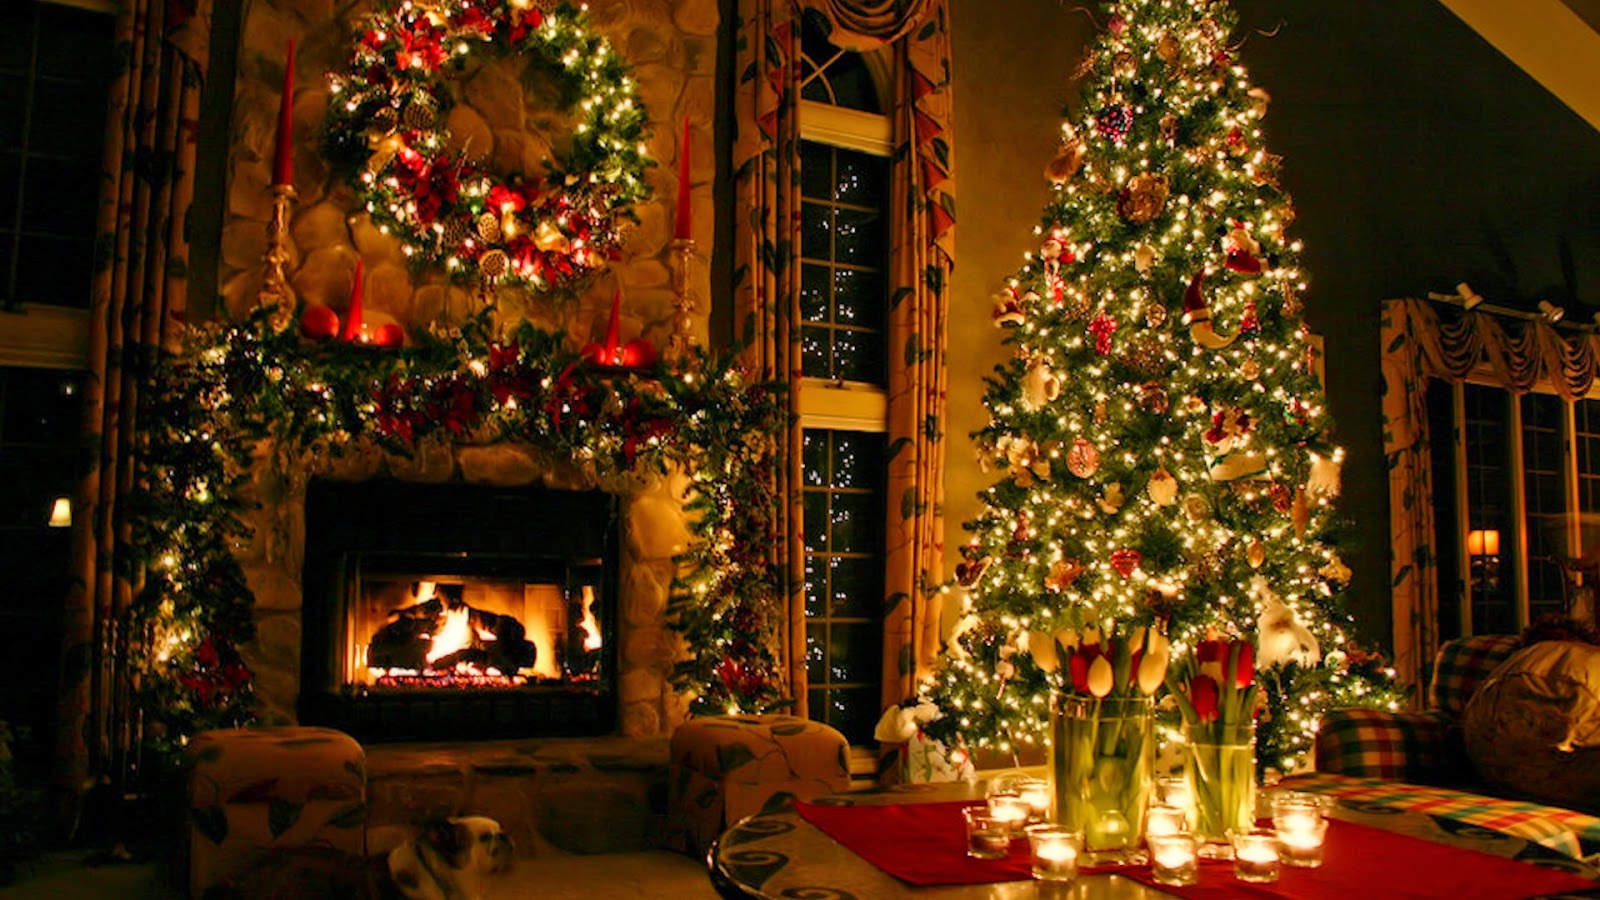 weihnachtstapeten leben kostenlos,weihnachten,weihnachtsbaum,weihnachtsdekoration,weihnachtsschmuck,heiligabend